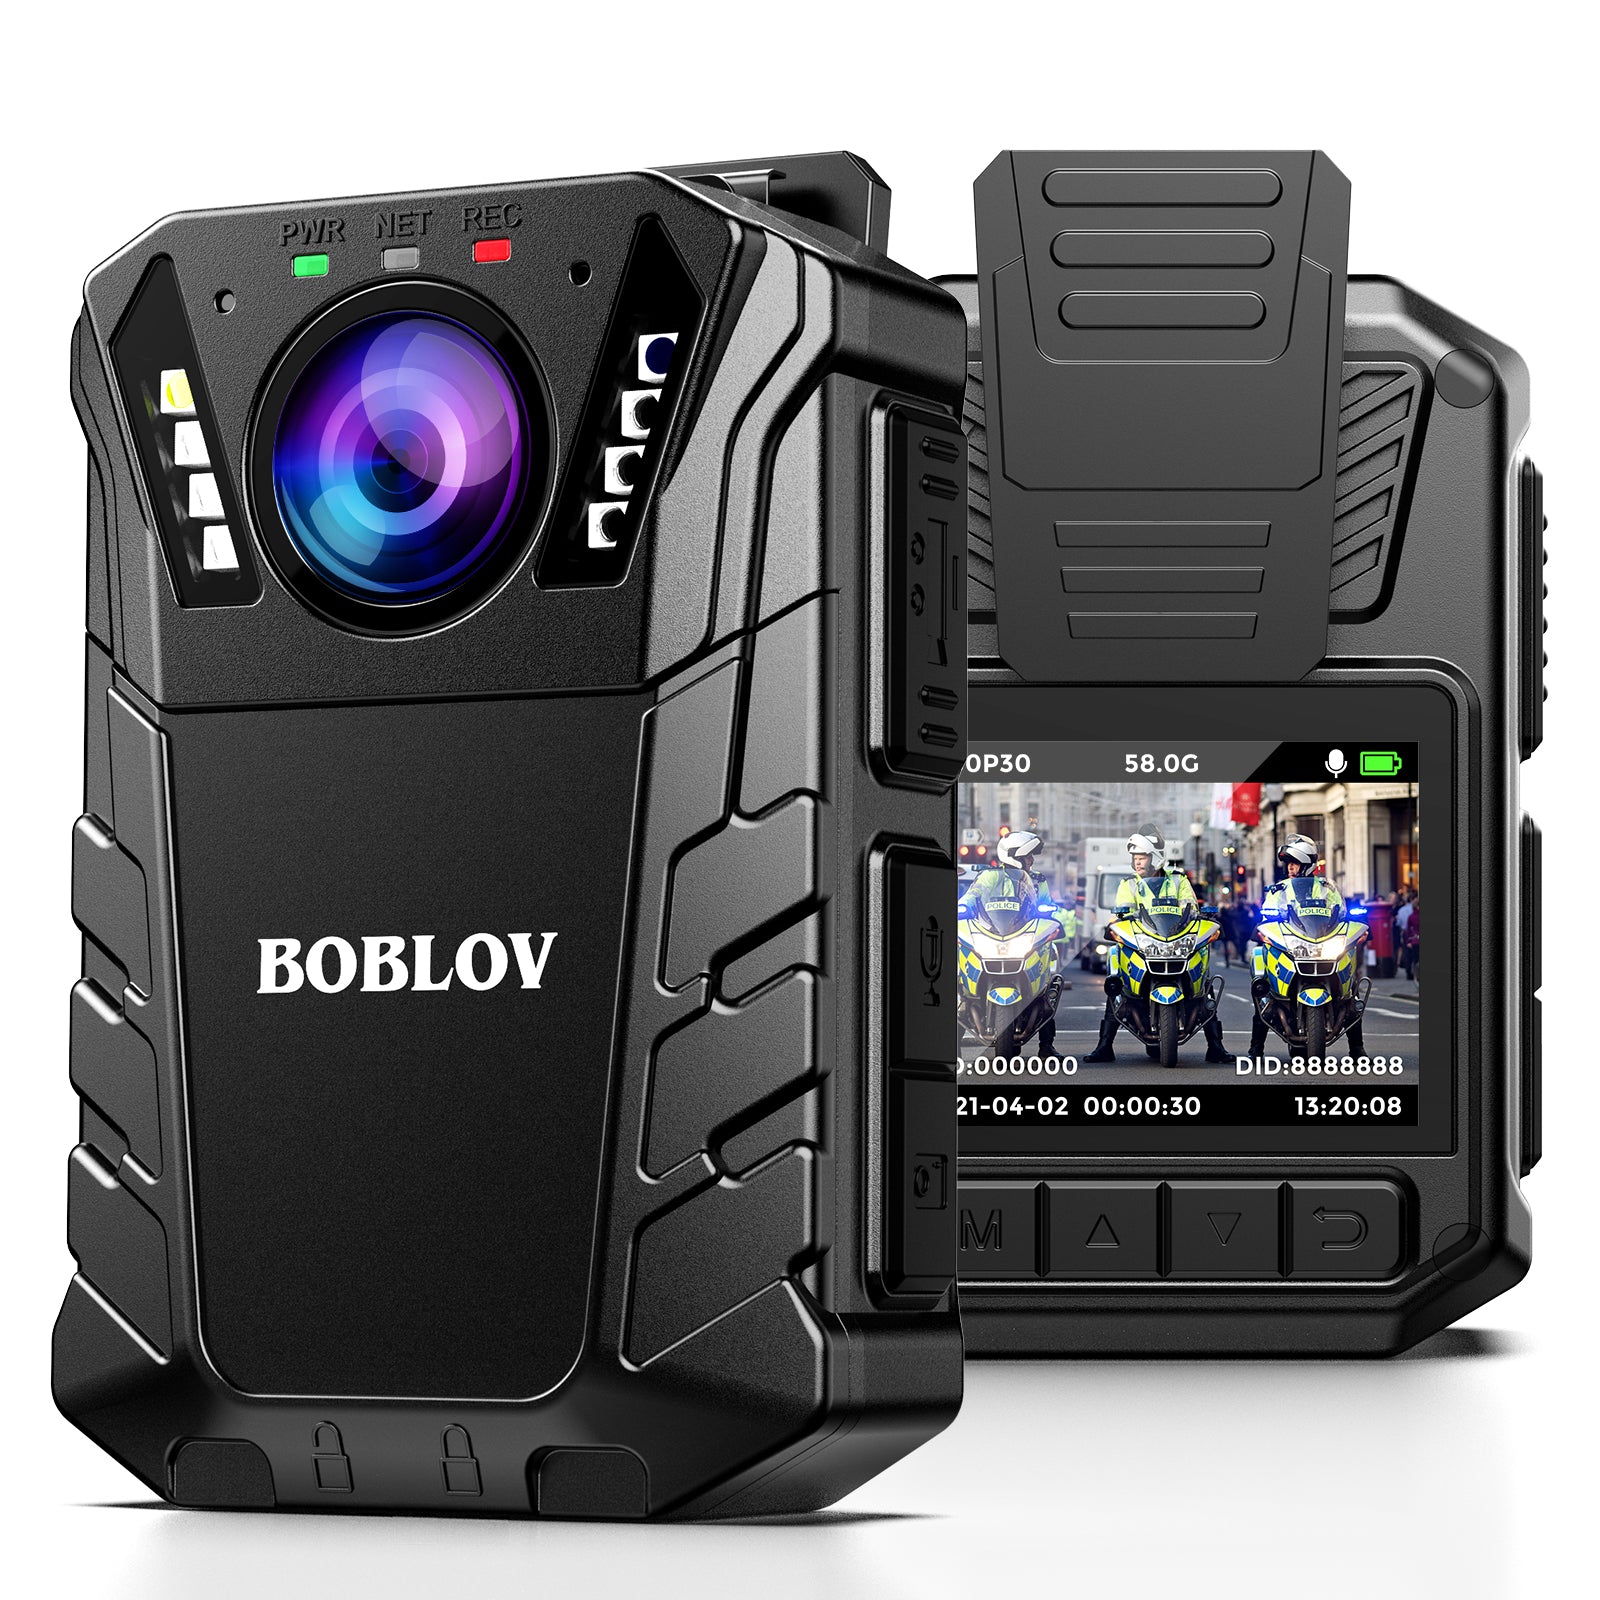 BOBLOV KJ09 1296P Body Camera Support External Lens 10 Hours Recording